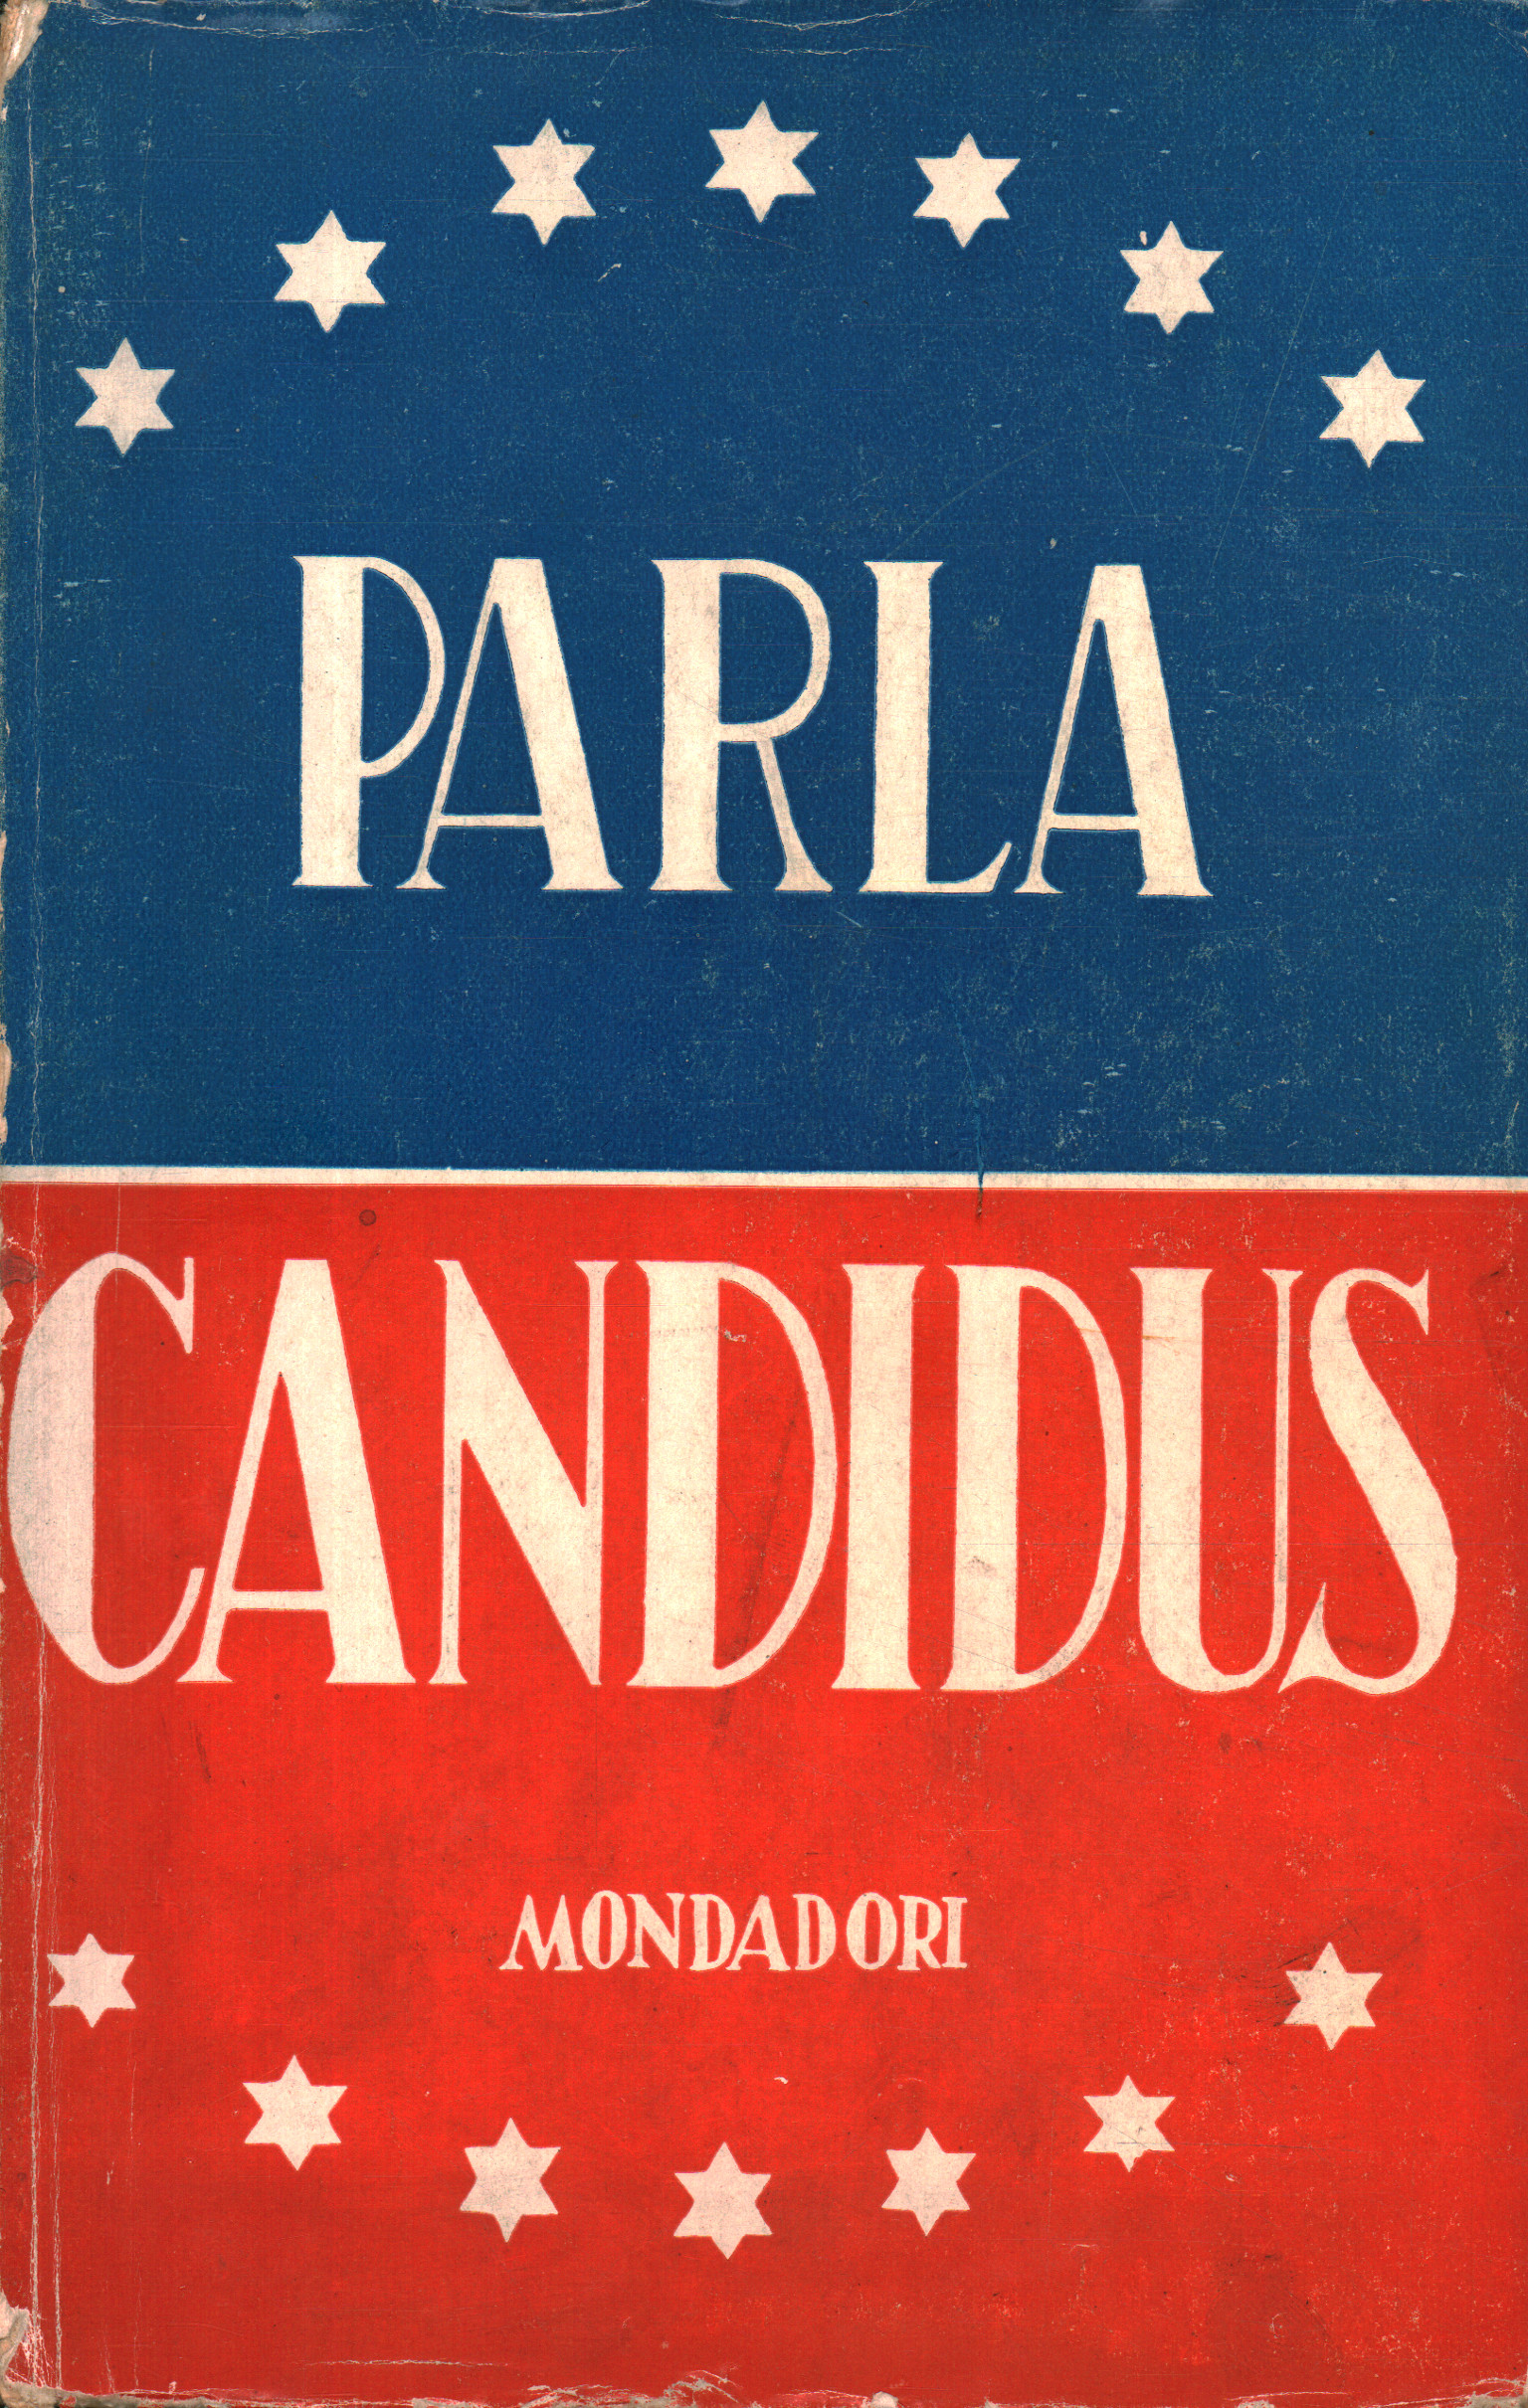 Sprich Candidus